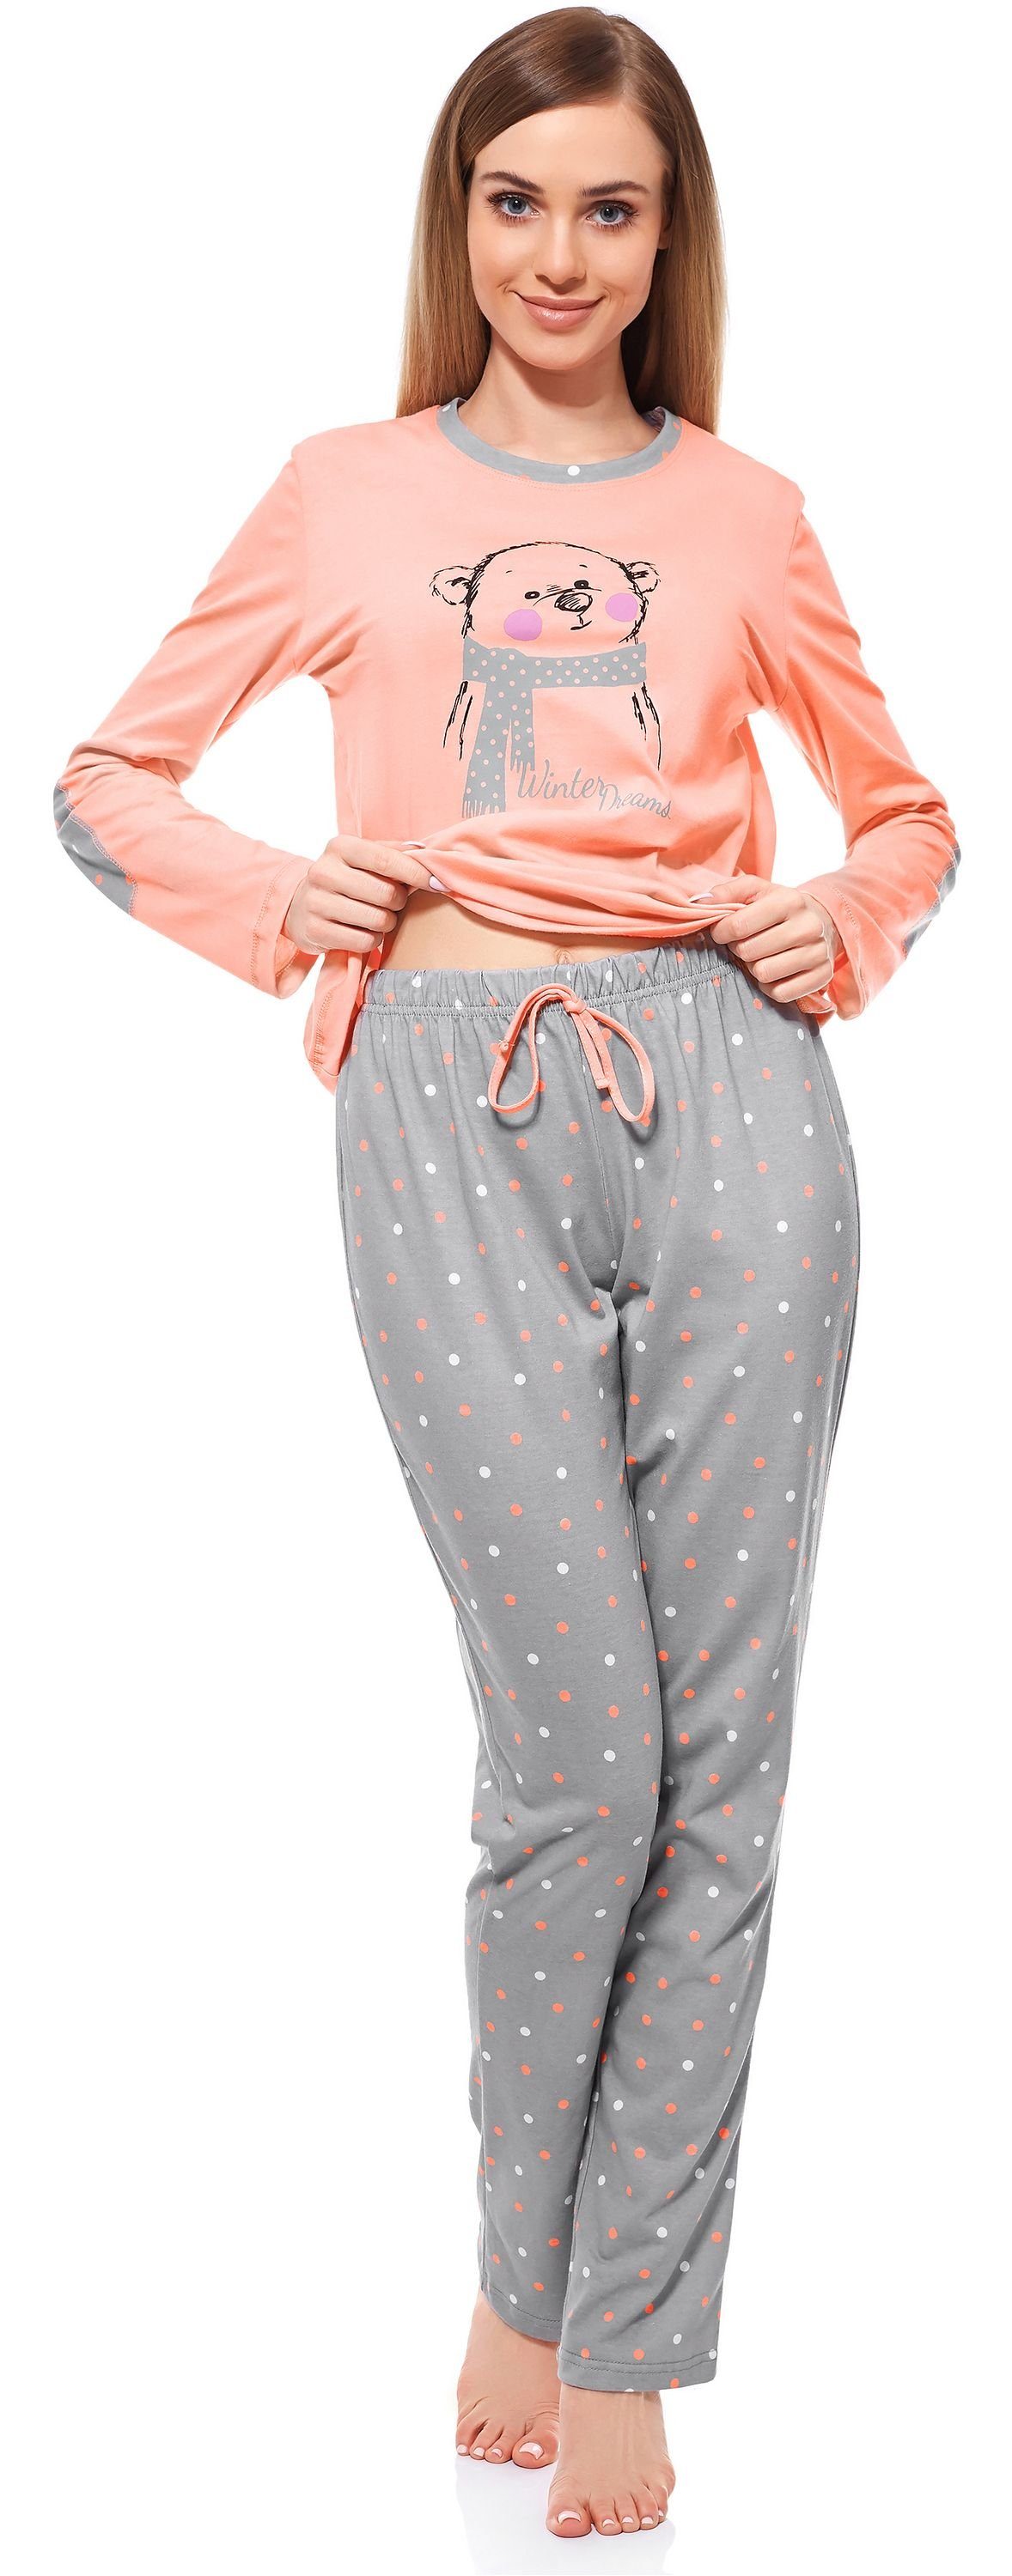 Merry Lachs Style Damen MS10-169 Schlafanzug Schlafanzug Grau